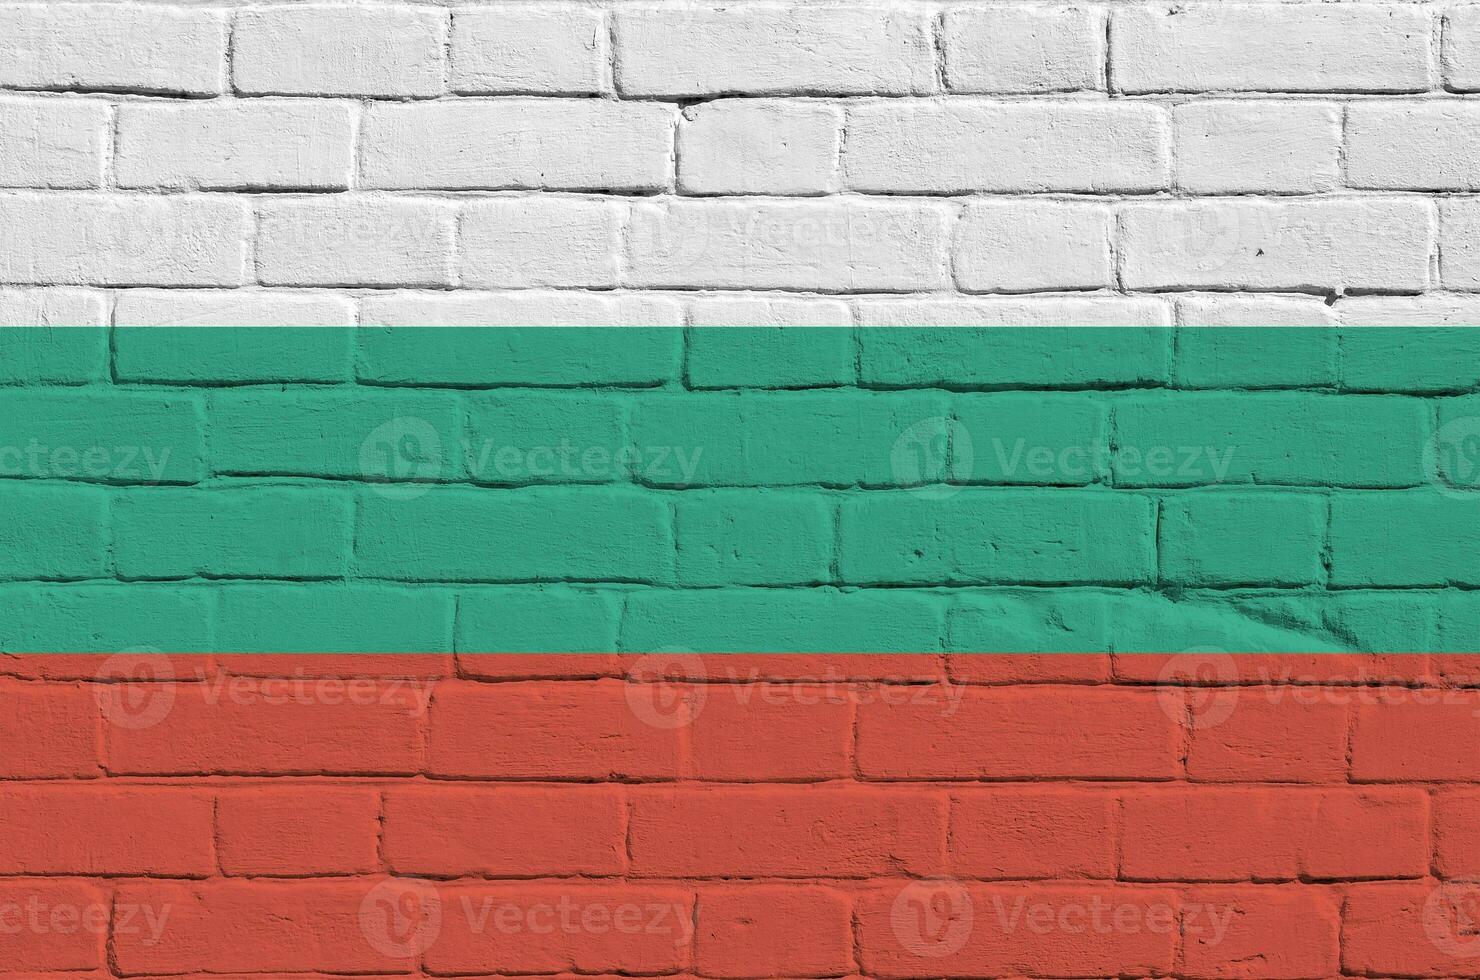 bulgarien flagga avbildad i måla färger på gammal tegel vägg. texturerad baner på stor tegel vägg murverk bakgrund foto